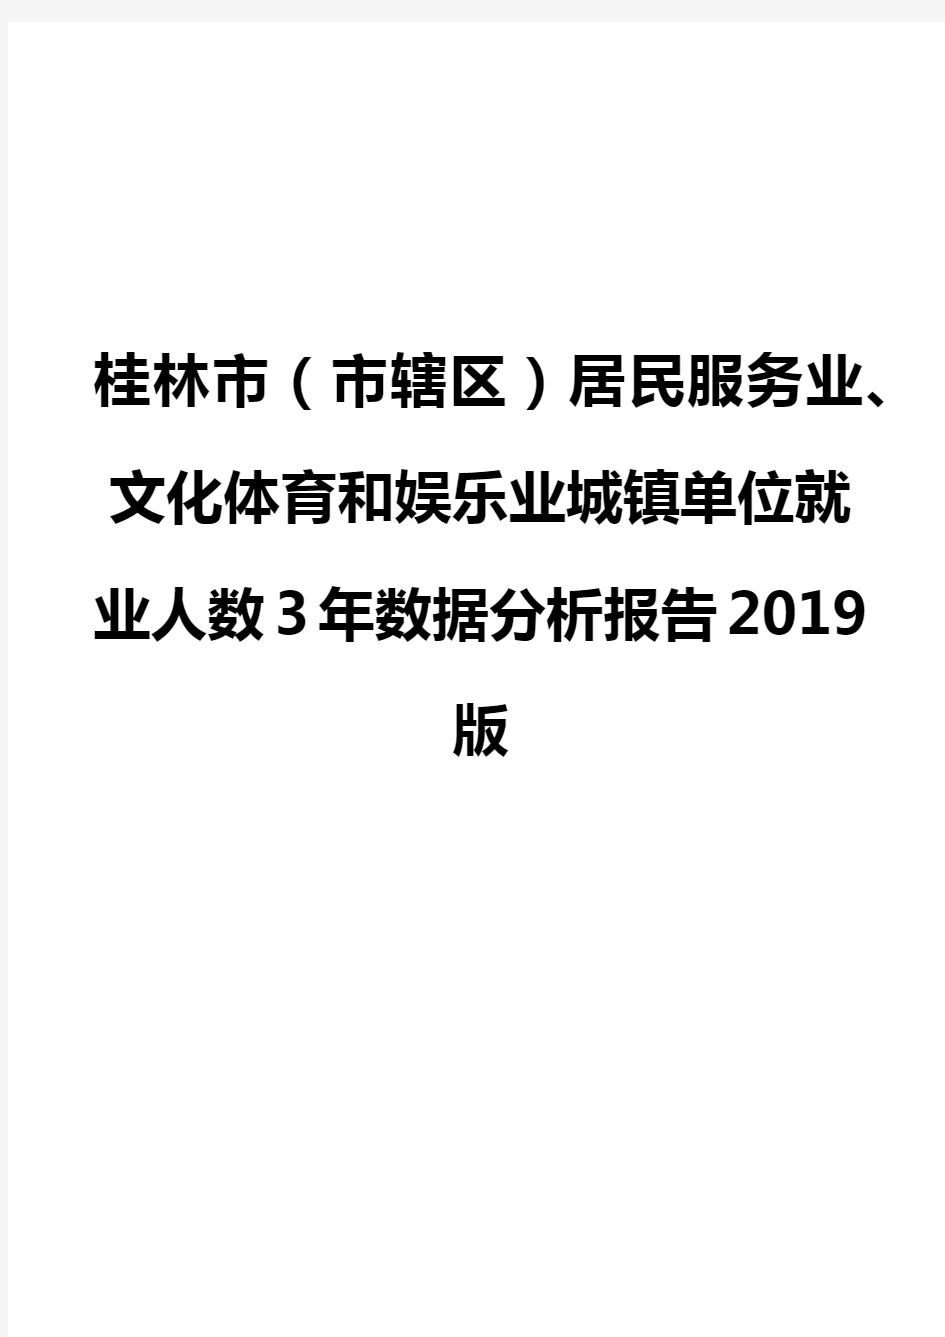 桂林市(市辖区)居民服务业、文化体育和娱乐业城镇单位就业人数3年数据分析报告2019版